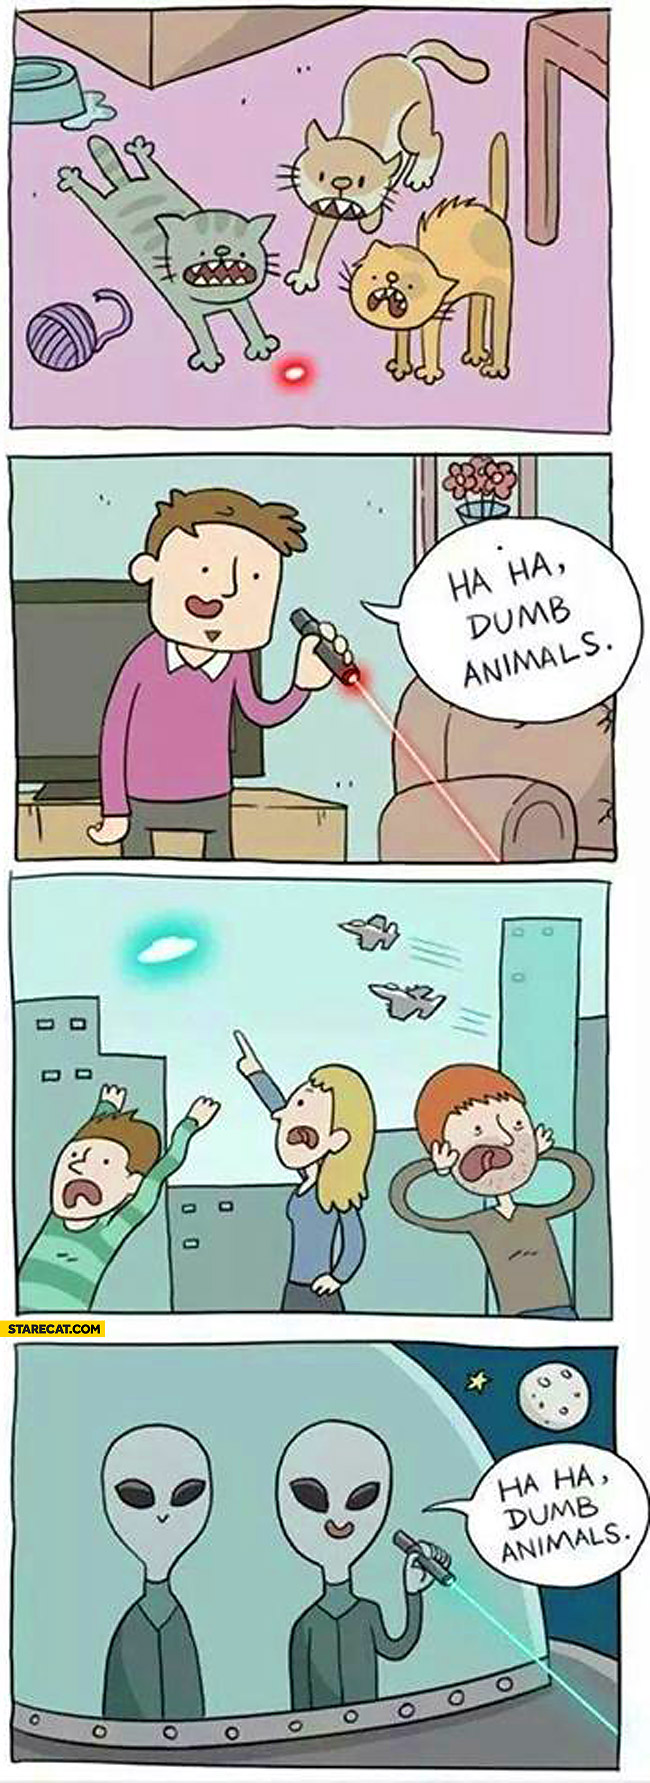 Ha ha dumb animals